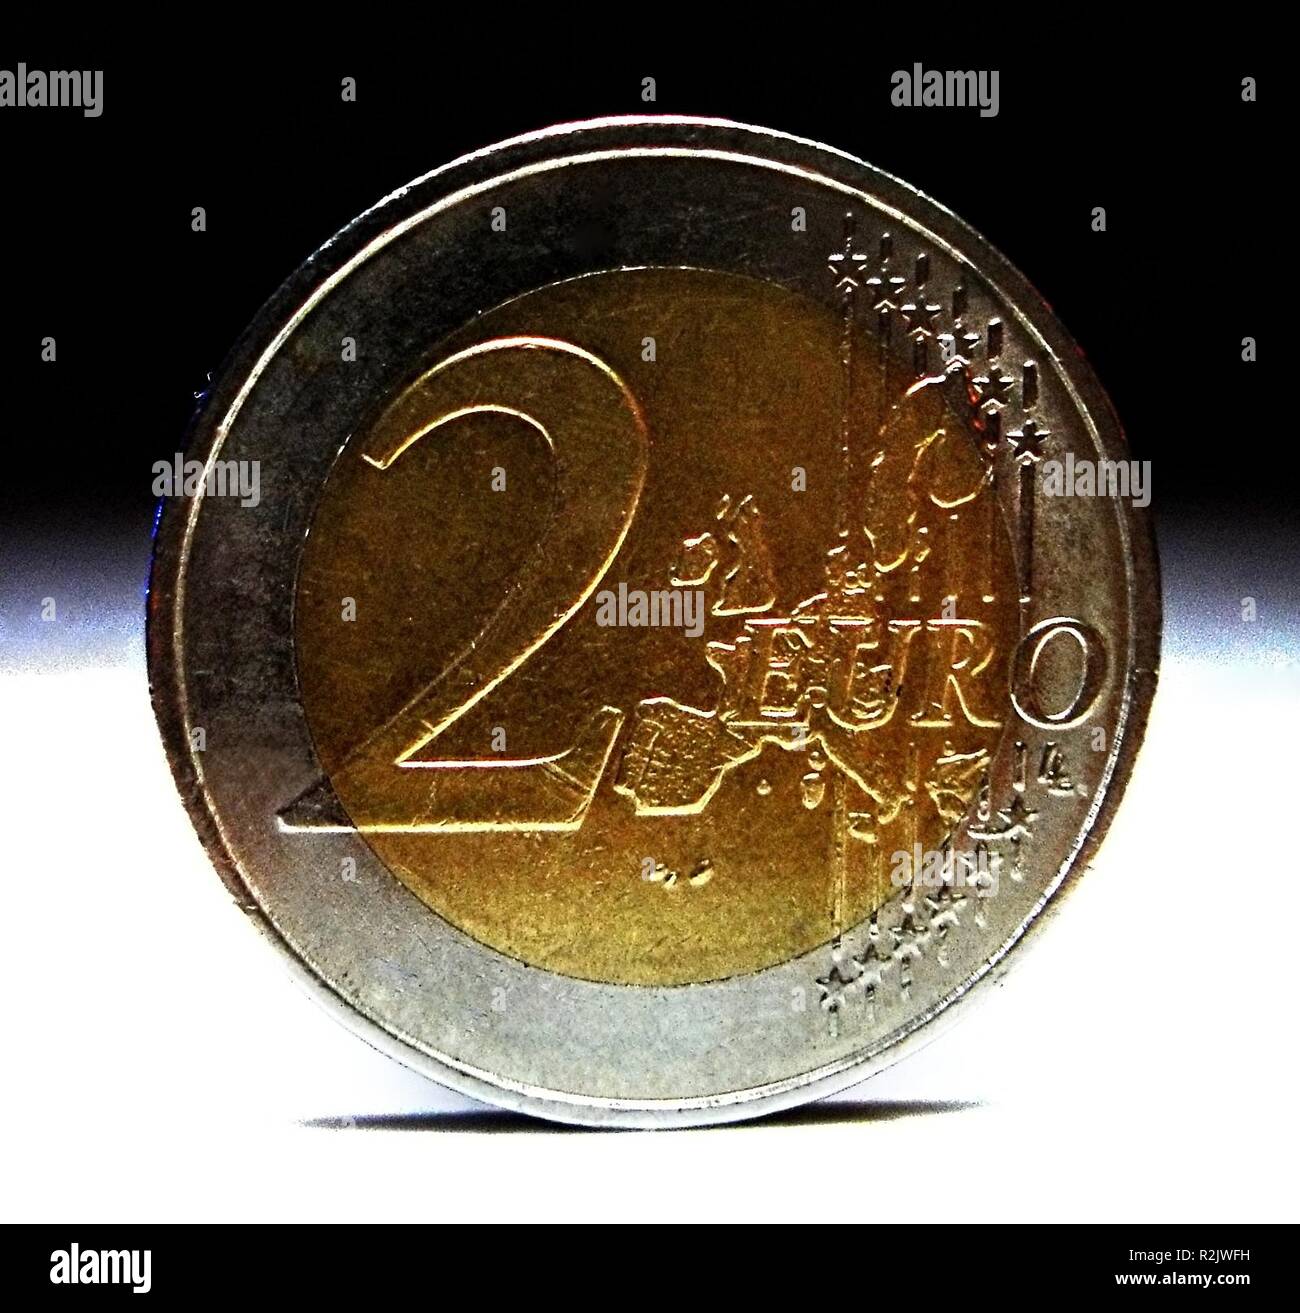 2 euro coin Stock Photo